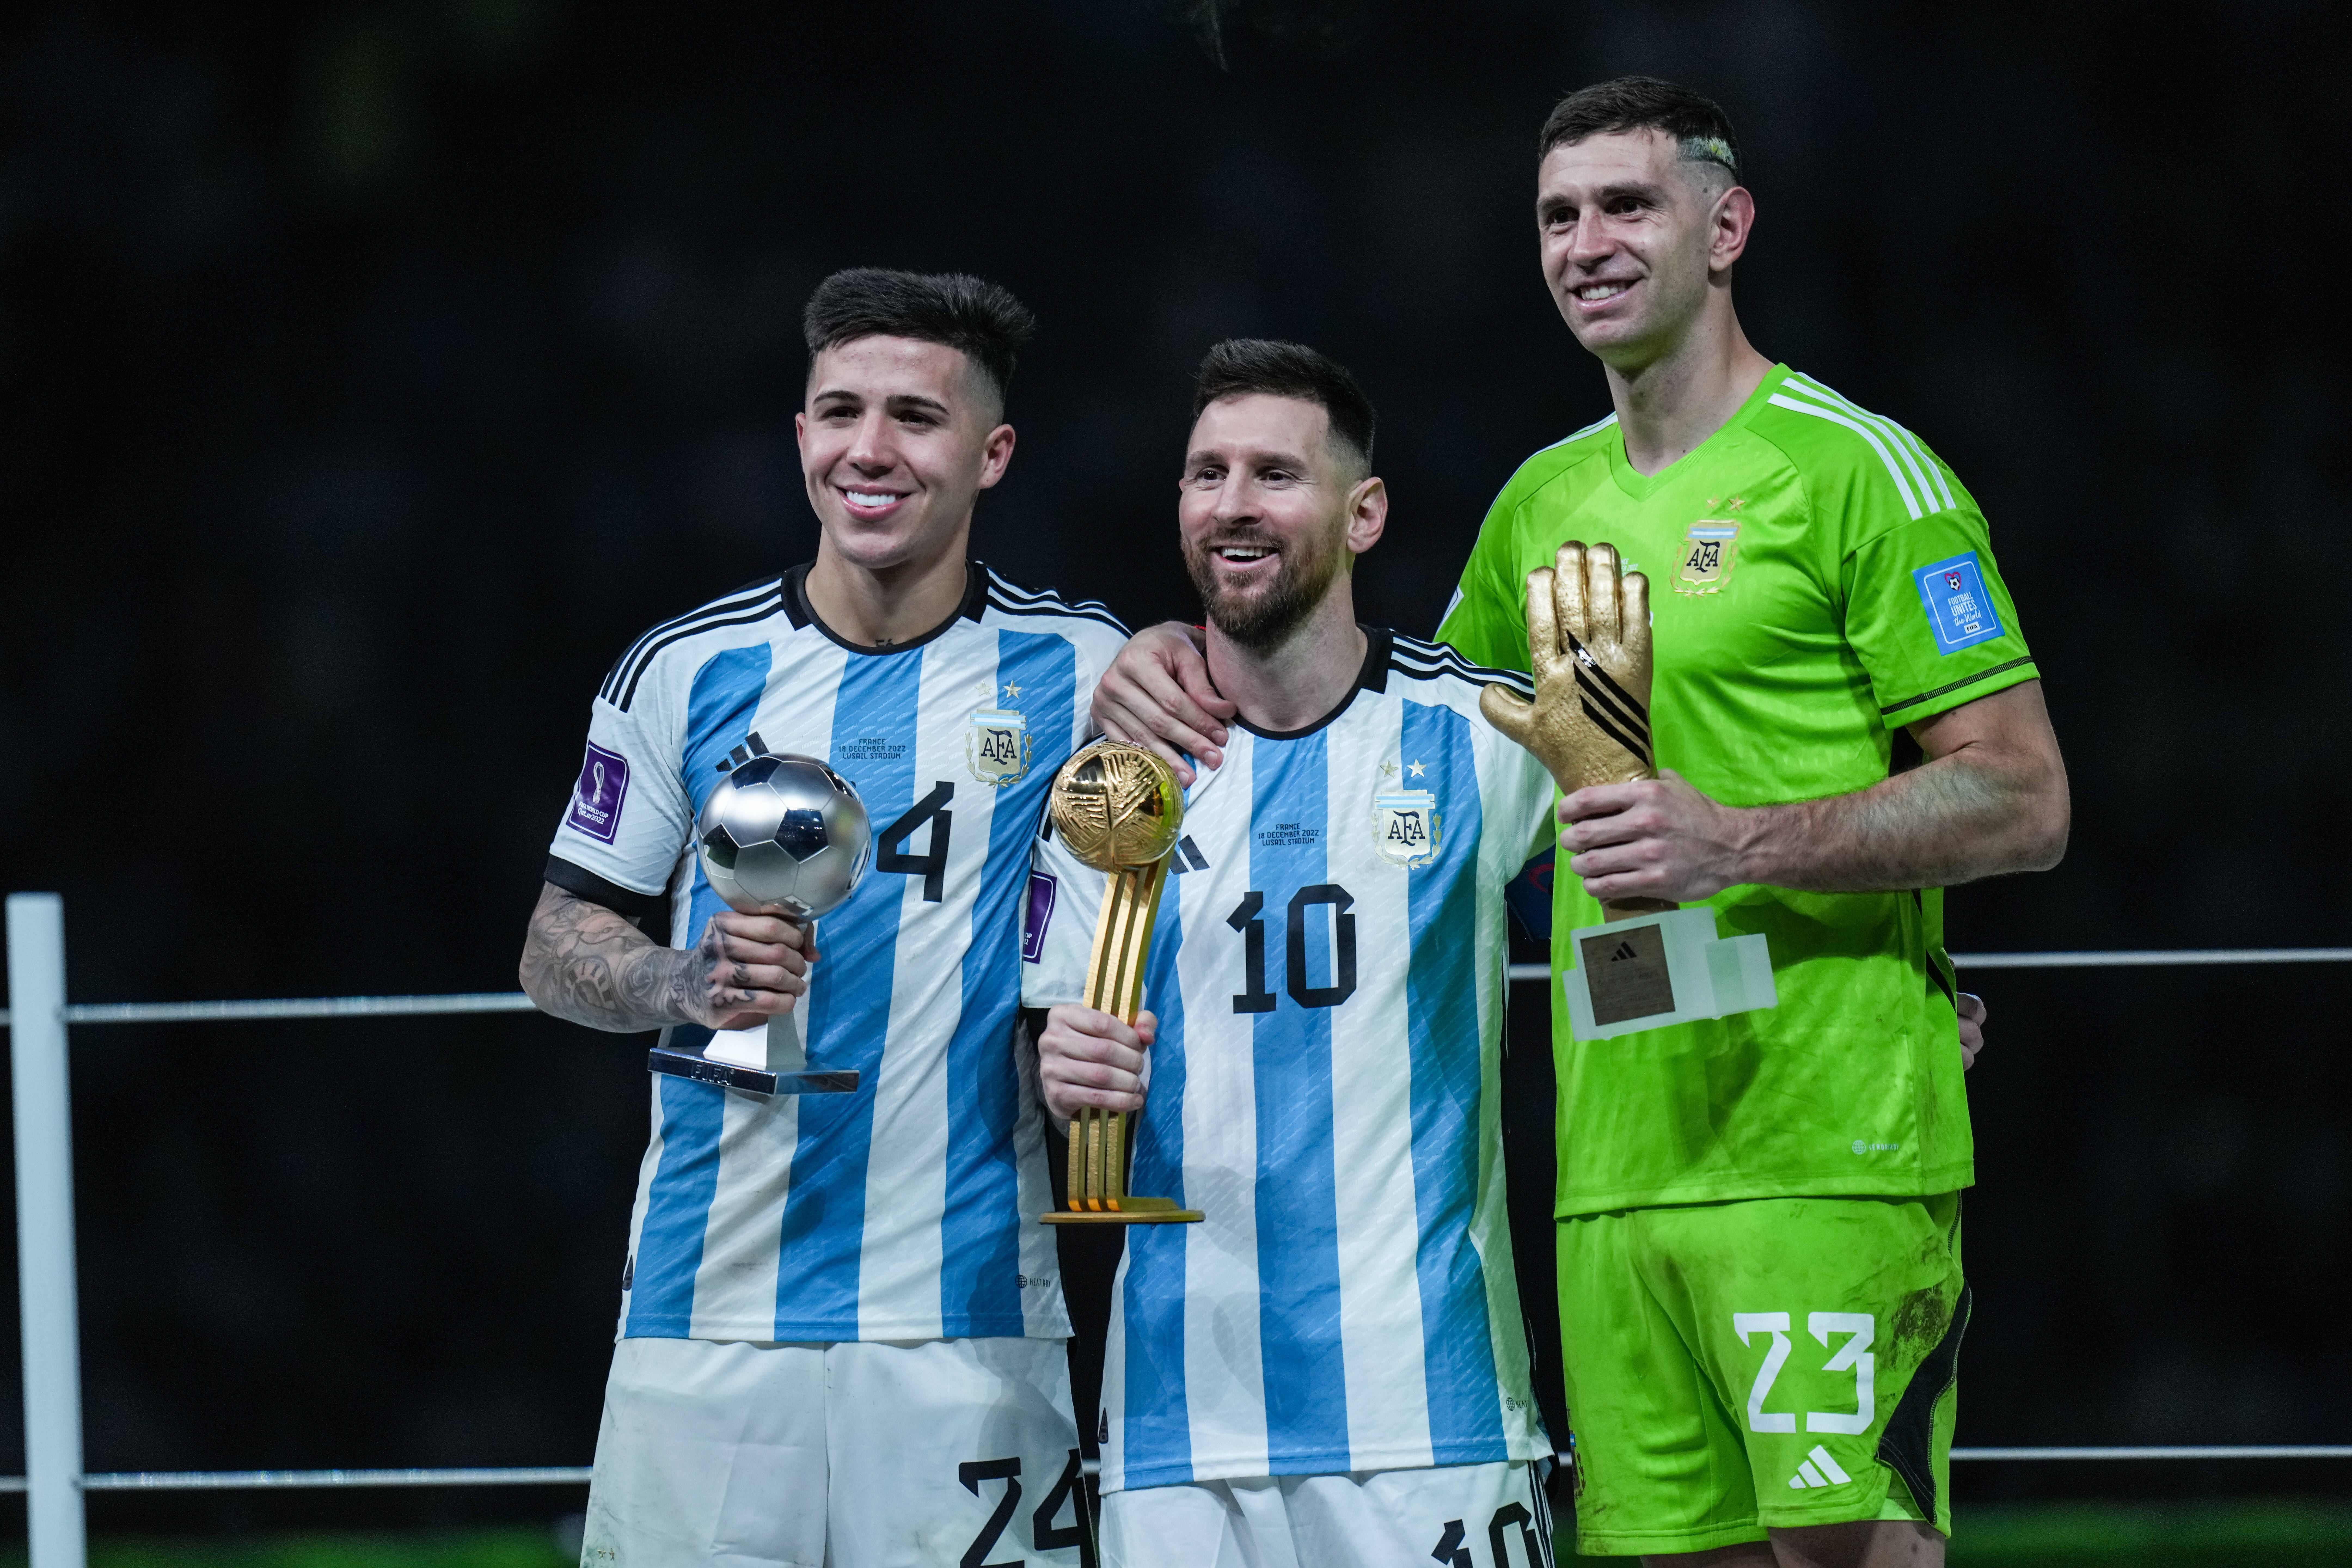 Fernandez, Messi, Martinez Mwährend der Preisverleihung nach dem Finale bei der WM